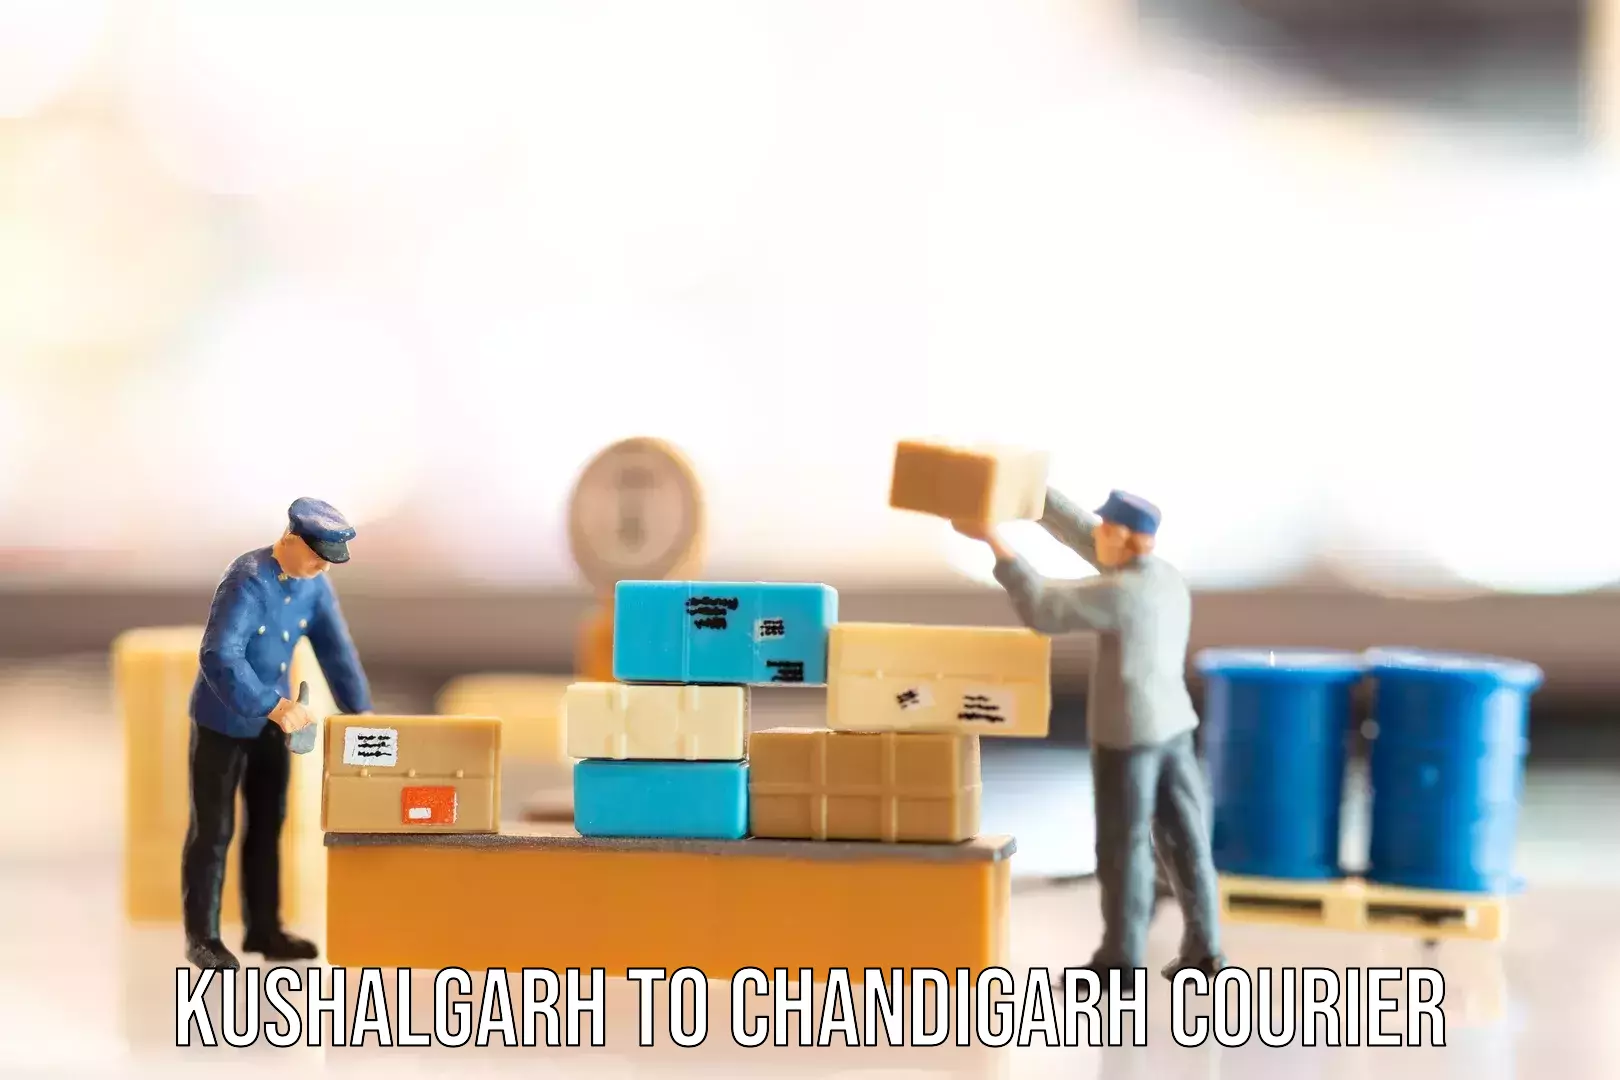 Luggage shipment tracking Kushalgarh to Chandigarh